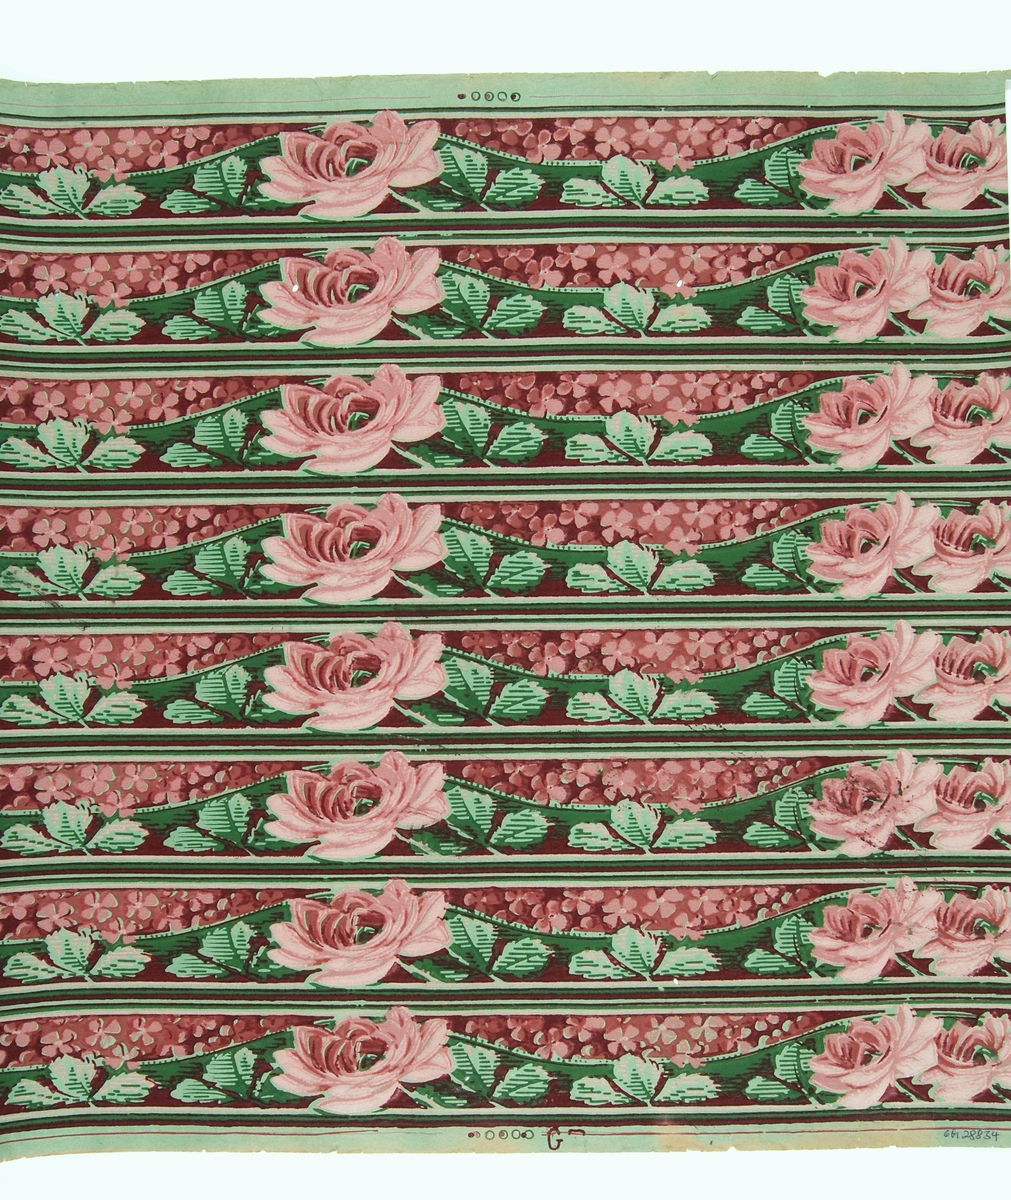 Oskurna tapetbårder med rosor och blomstergirlander i rött, grönt och rosa. Tryckt på obestruken botten av grönt genomfärgat papper, bottenfärgen utsparad i mönstret. Tillverkad av Göteborgs tapetfabrik. IB